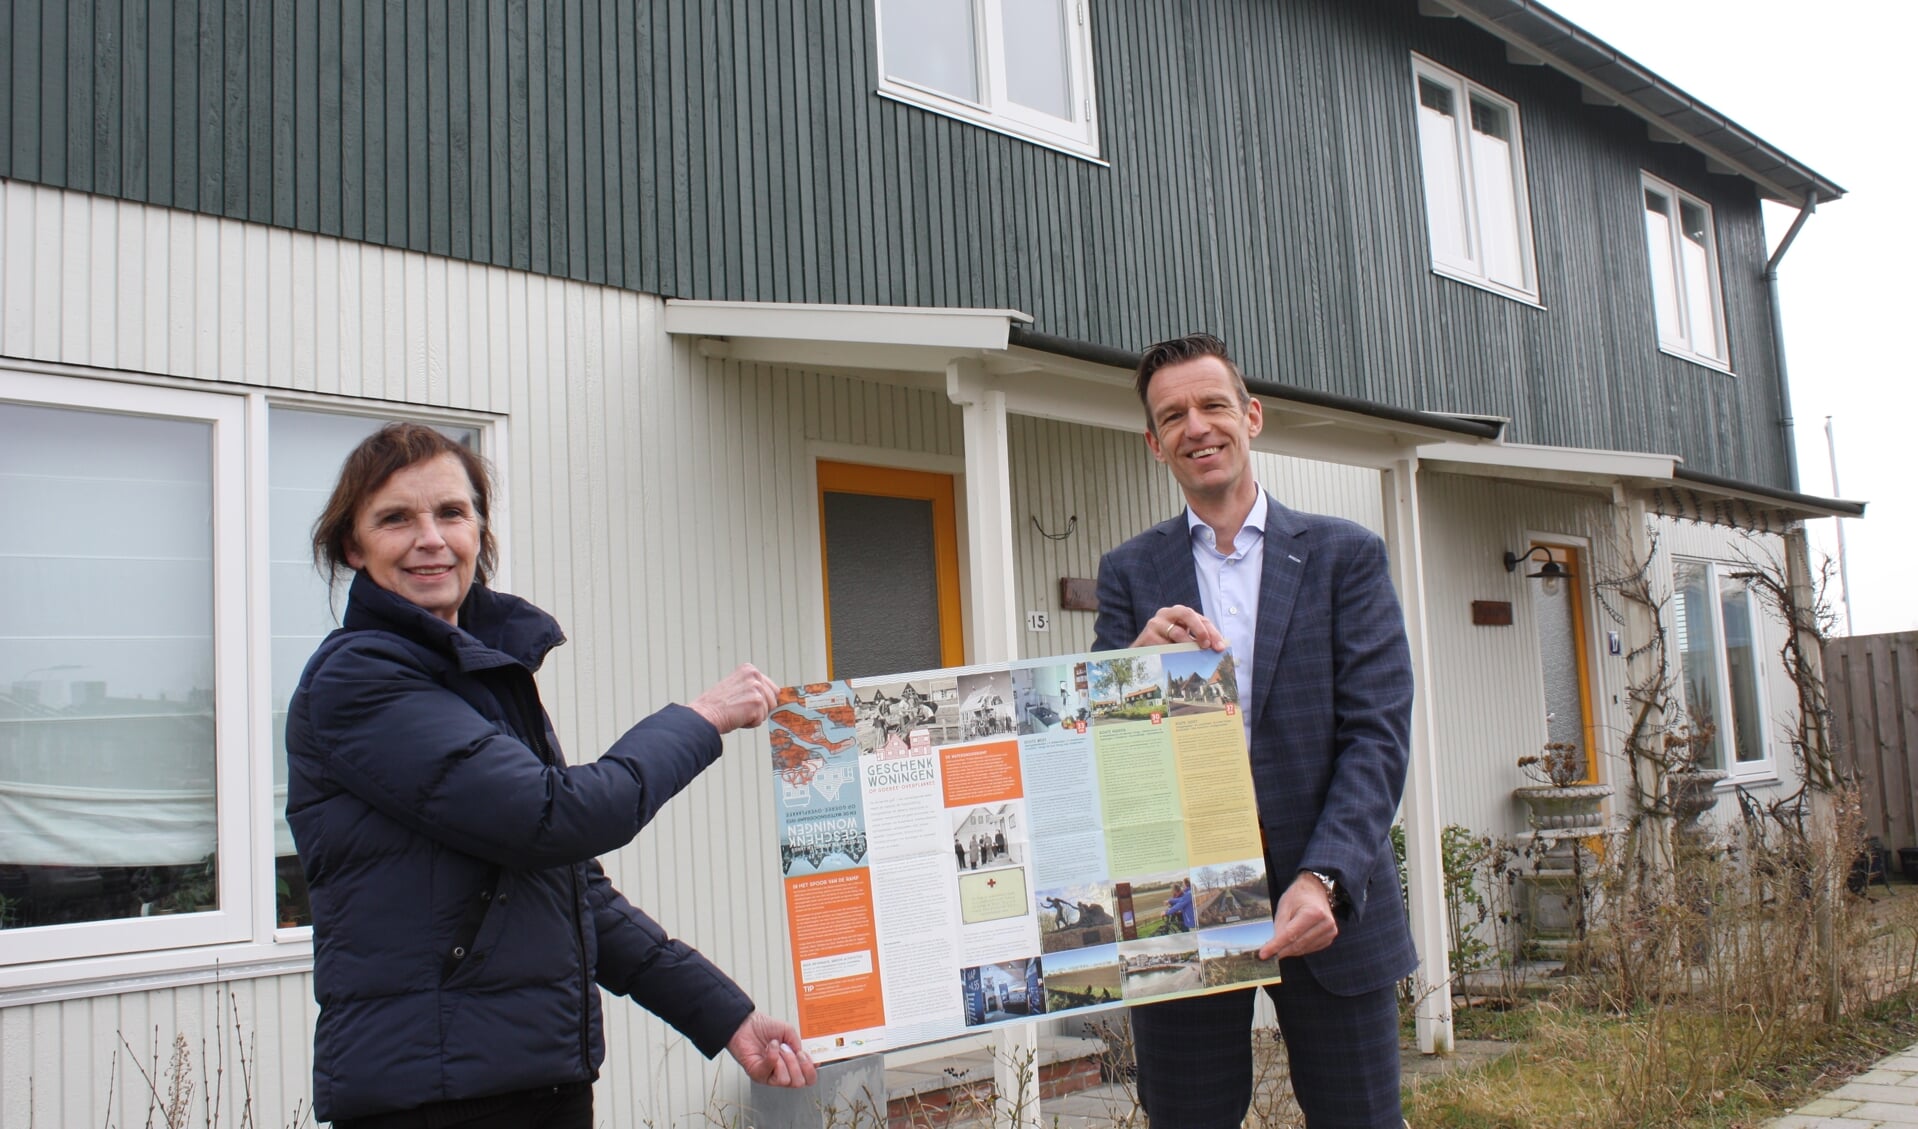 Daan Markwat ontvangt het eerste exemplaar van de routekaart Geschenkwoningen uit handen van Patty van der Kleij, projectleider erfgoedlijn Goeree-Overflakkee bij de provincie Zuid-Holland (Foto: Kees van Rixoort).